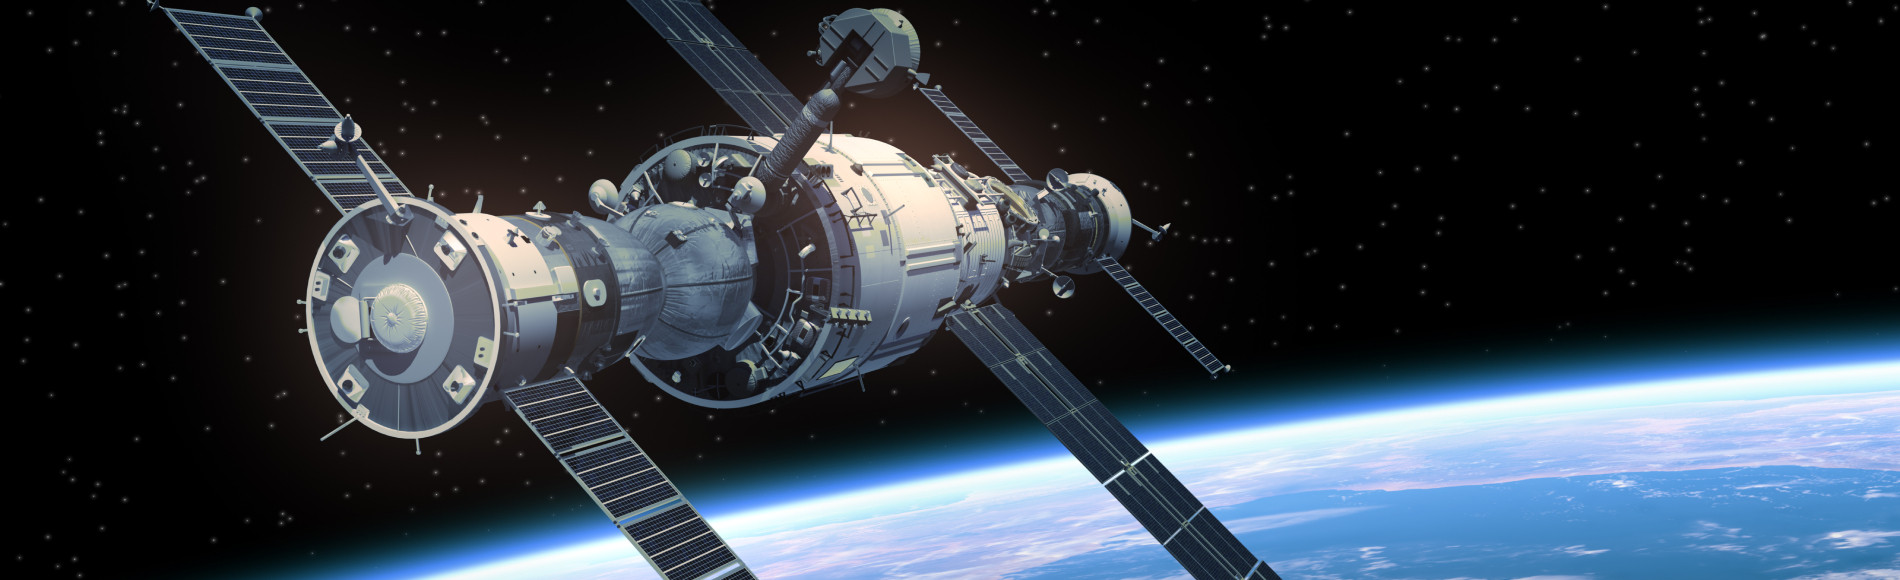 «Вызов» – первый фильм в мире, снятый в космосе